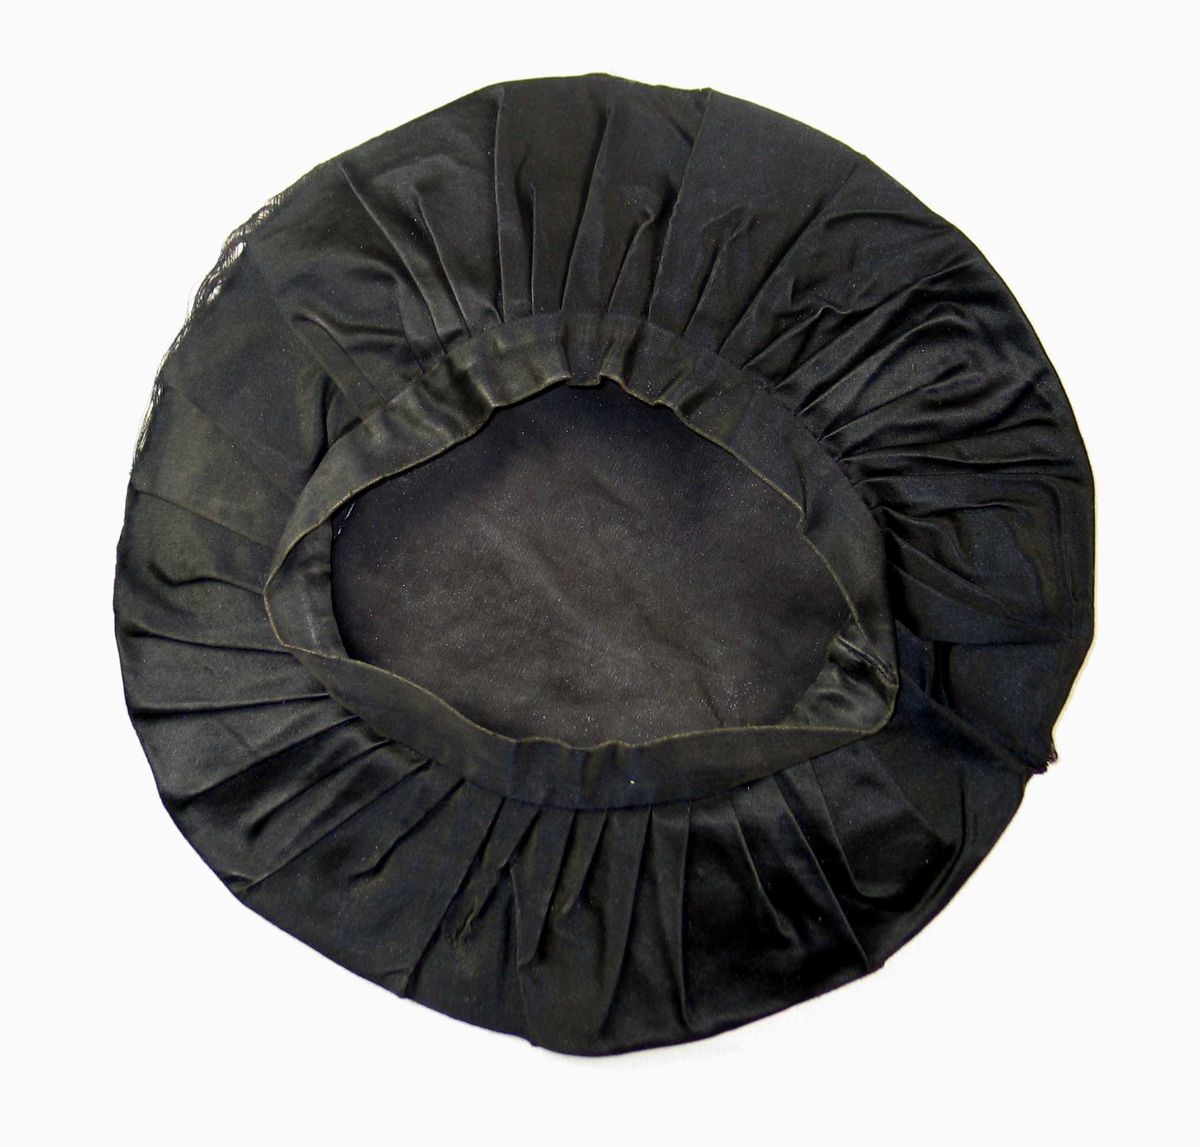 Pull sydd av sirkelrundt stykke silketøy med diam 54 og 46 folder, vendt samme vei, sydd til en tre cm bred og 61 cm lang linning.